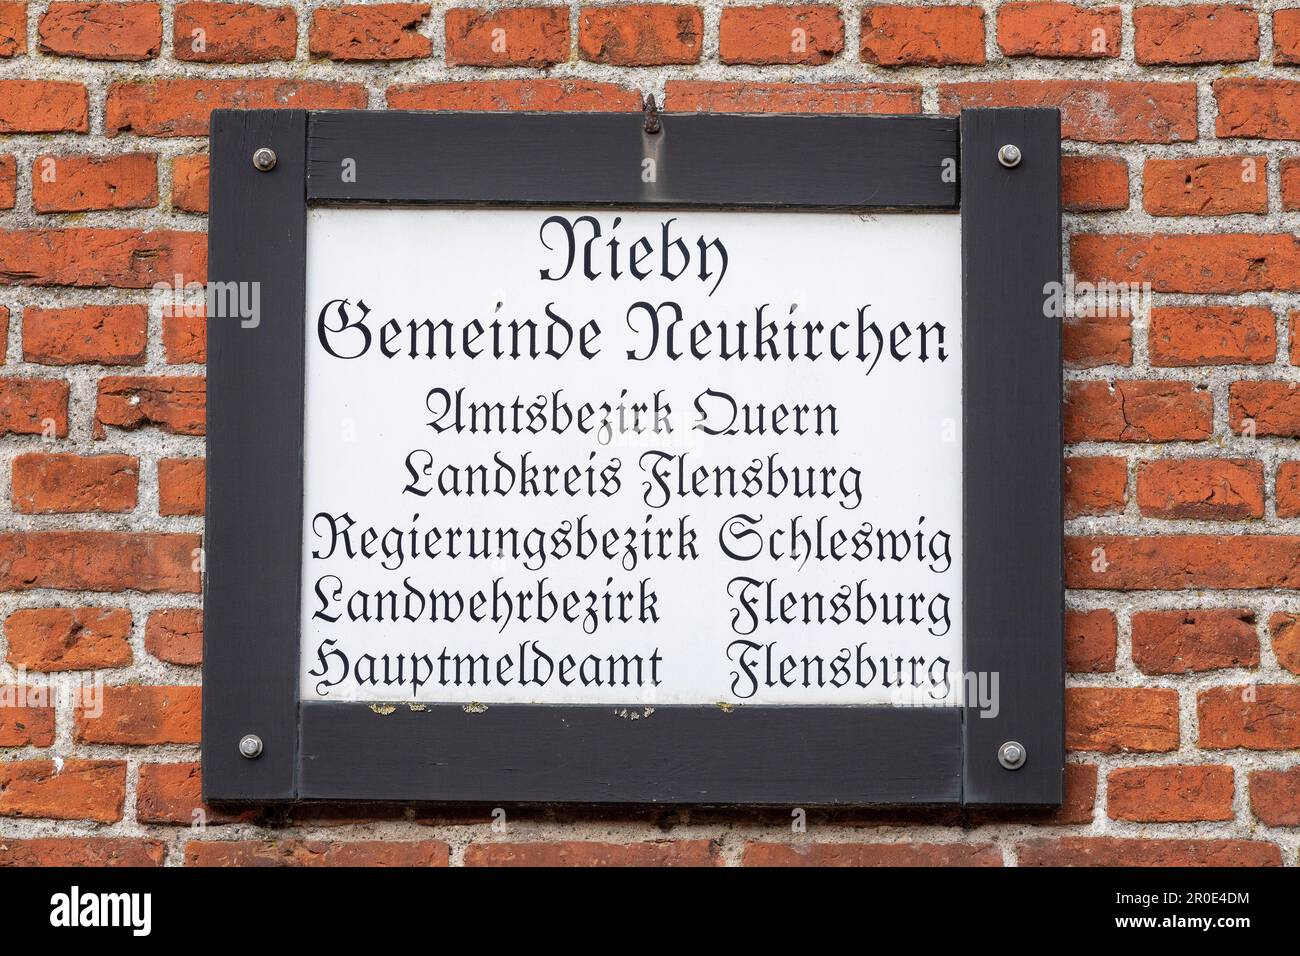 Hinweisschild an einer Hausmauer, Nieby, Neukirchen, Quern, Schleswig-Holstein, Deutschland Stockfoto